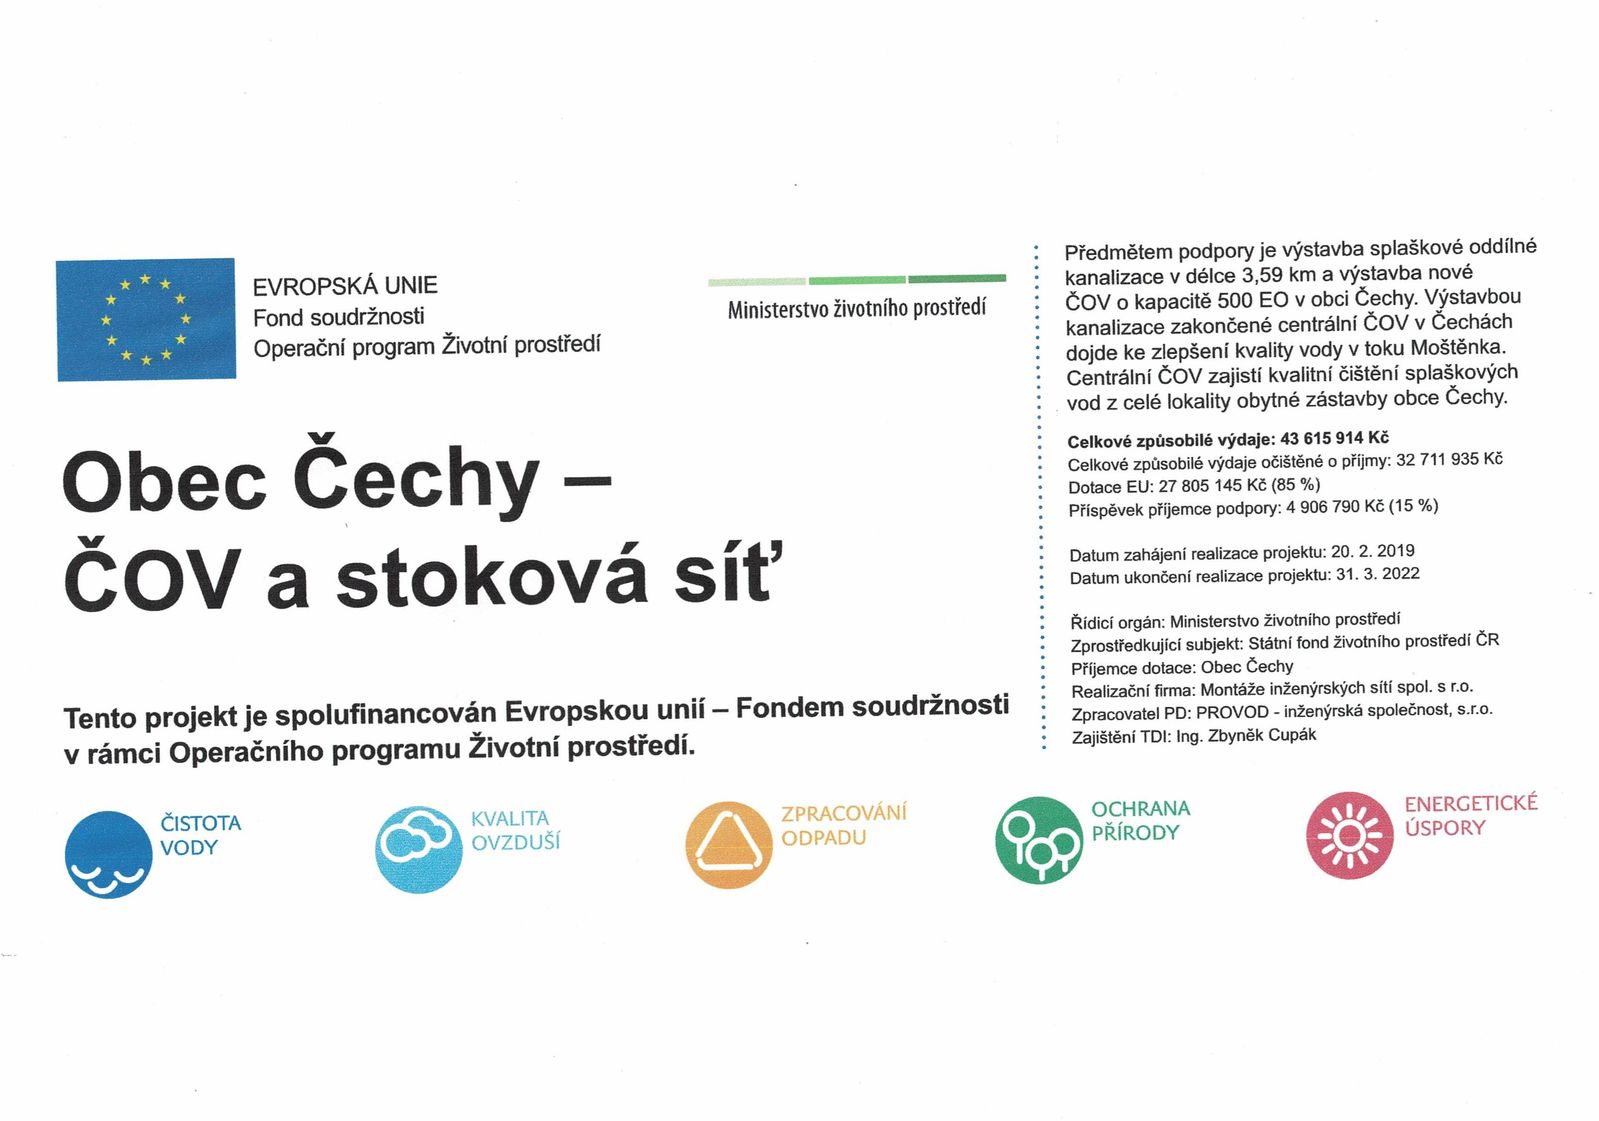 Obec Čechy - ČOV a stoková síť - propagace